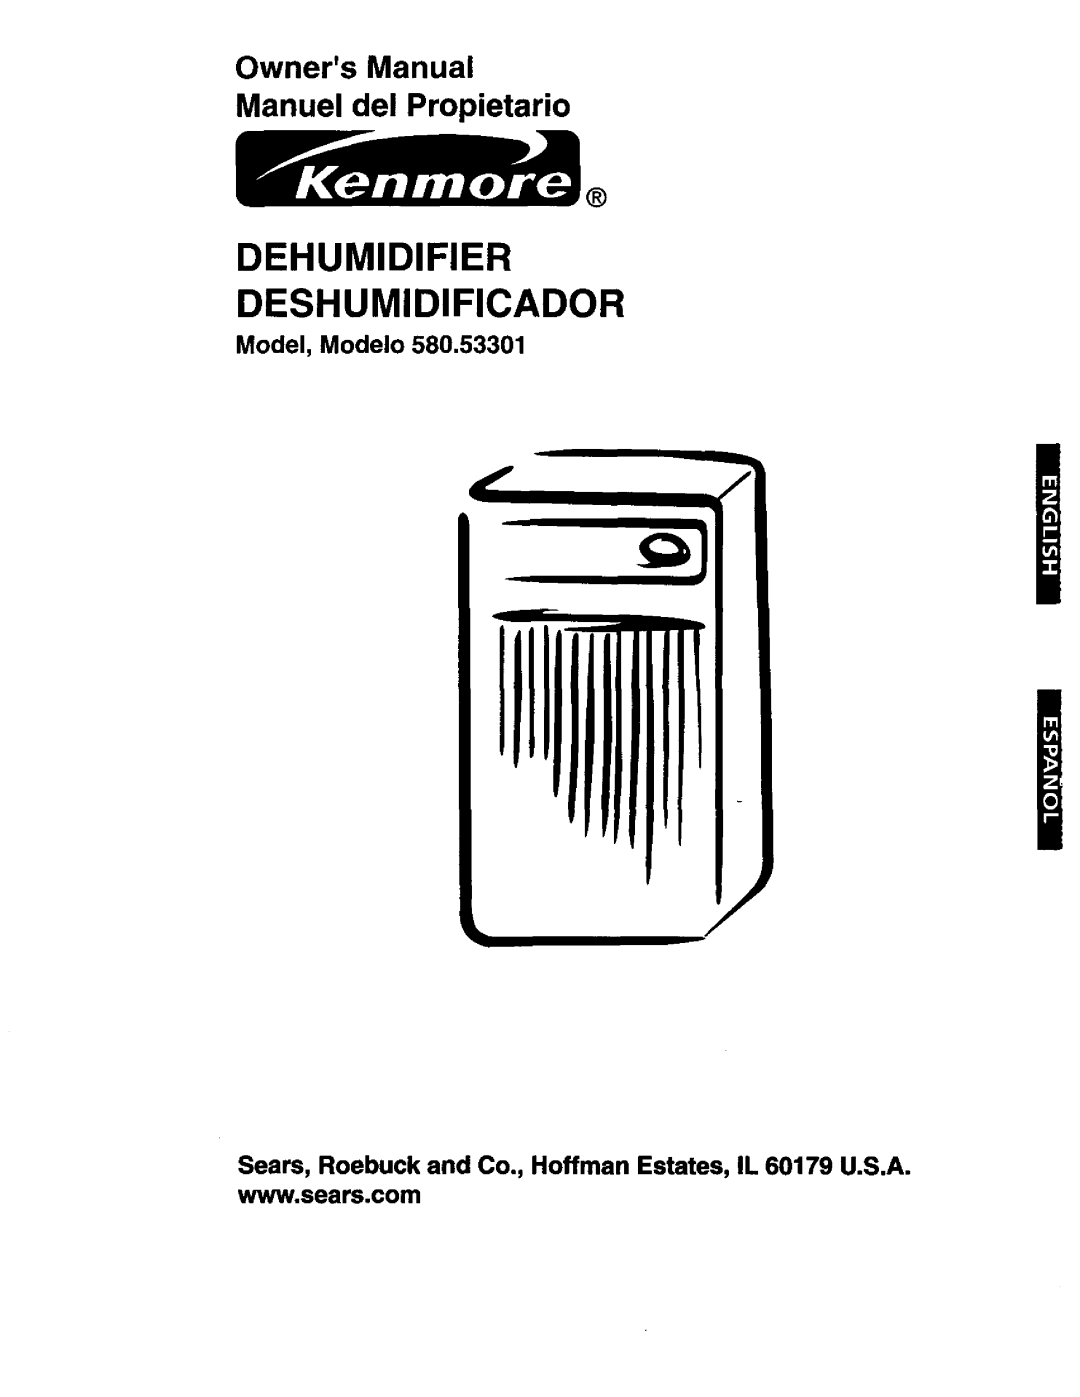 Kenmore 580.53301 owner manual Model, Modelo, Dehumidifier Deshumidificador, OwnersManual Manuel del Propietario 